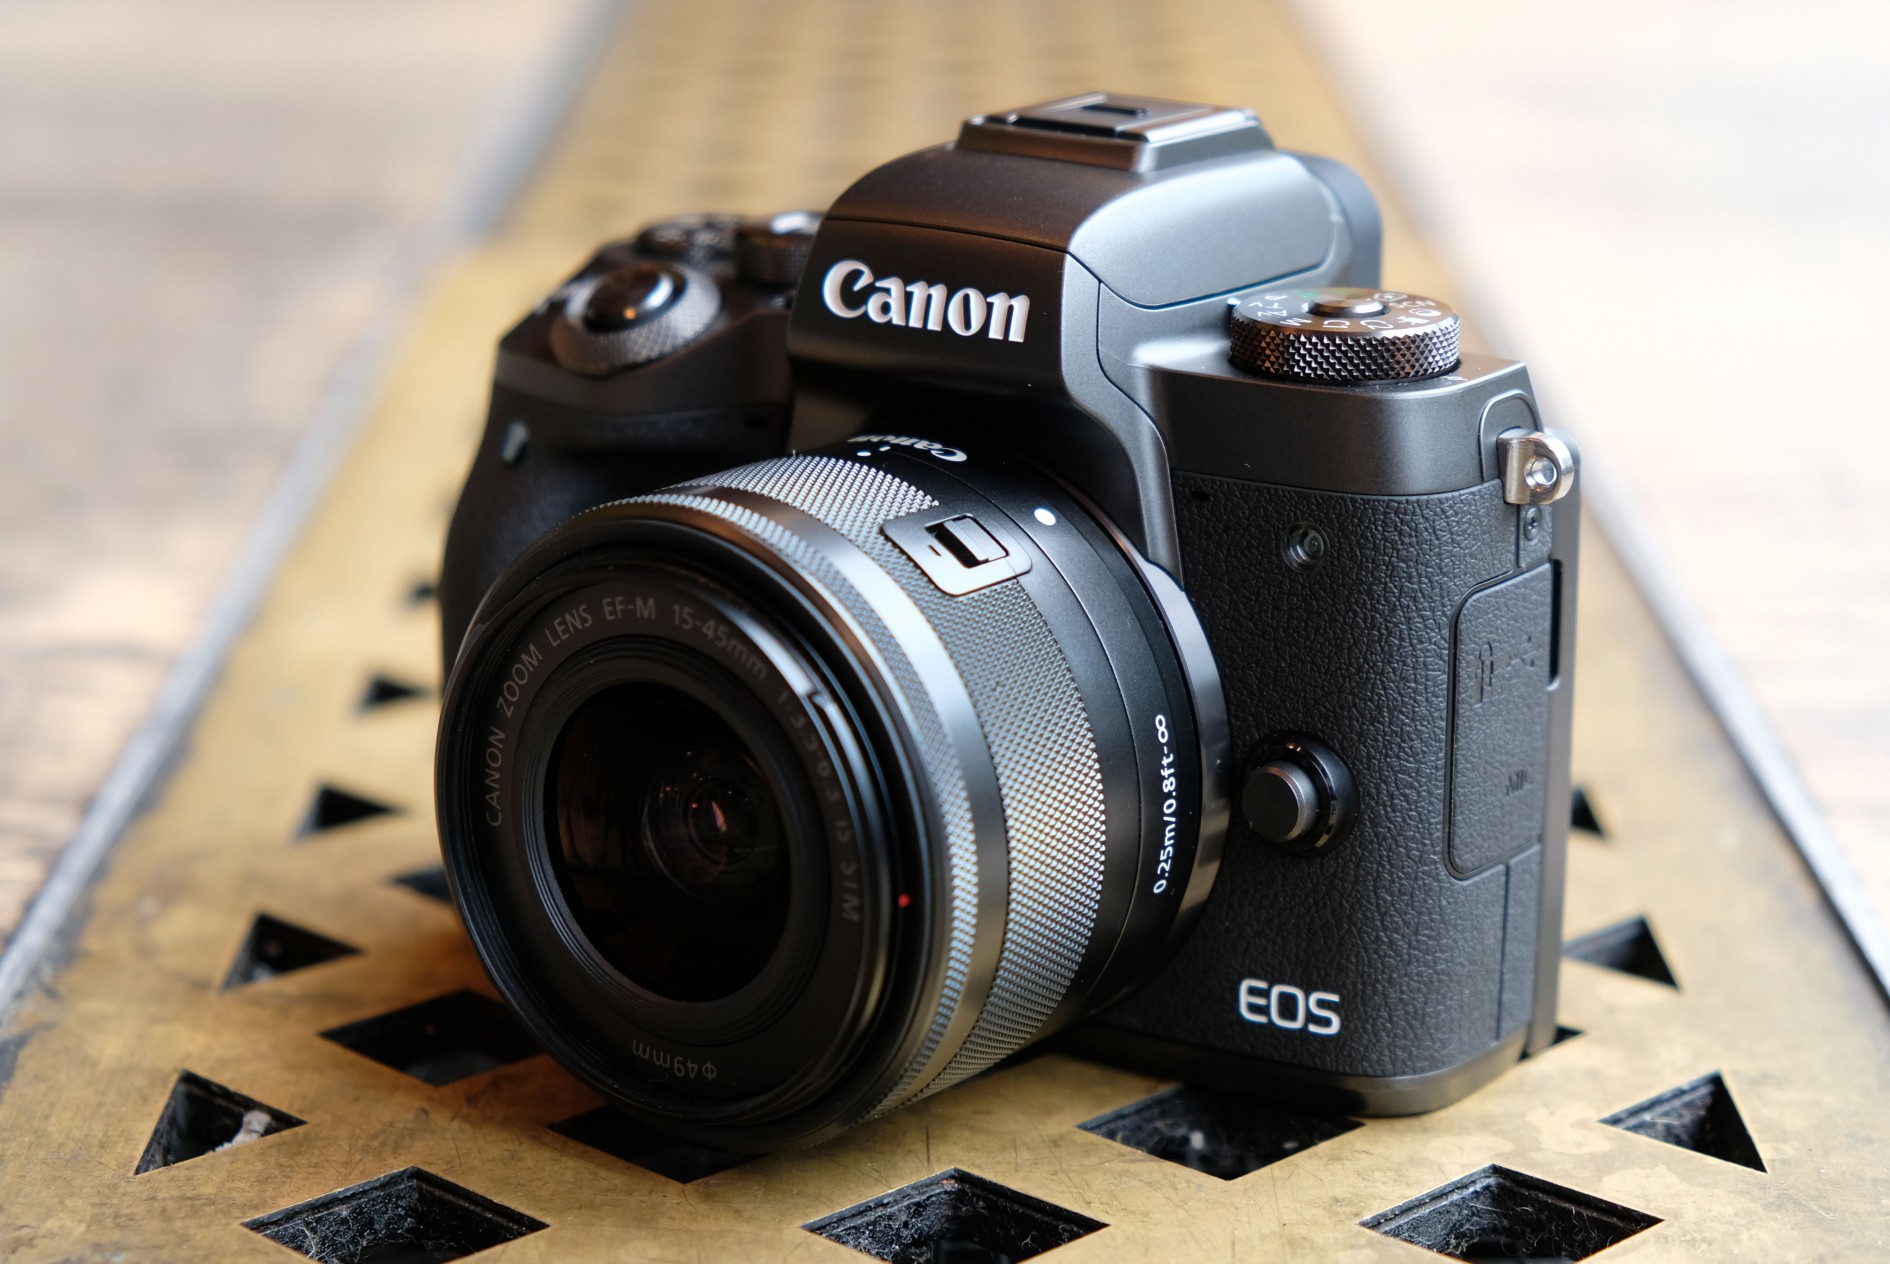 Rò rỉ thông số của Canon EOS M7 và có thể là dòng EOS M cuối cùng